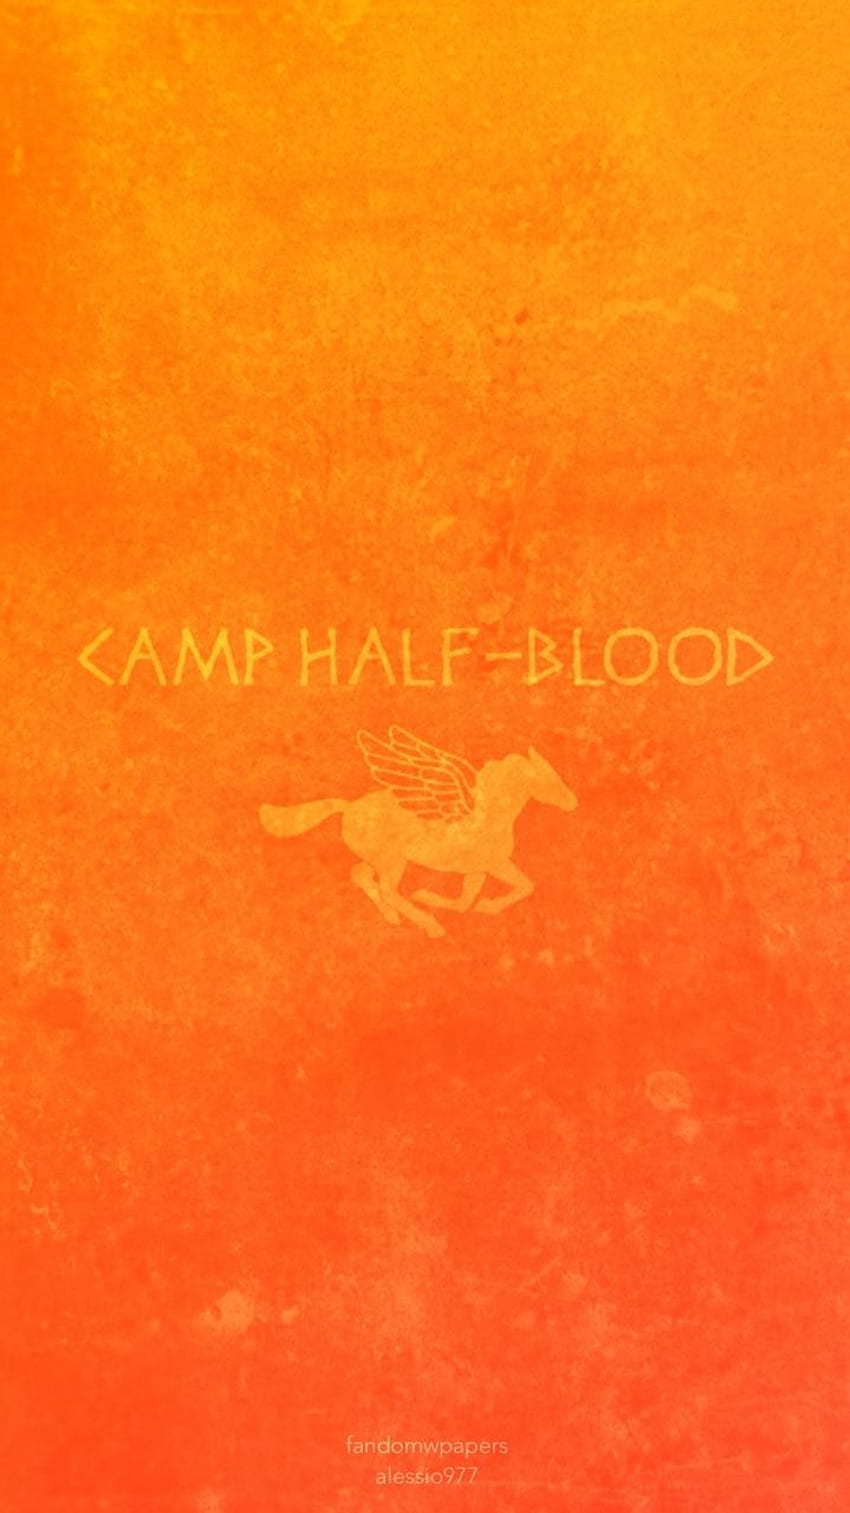 Camp Half Blood Nothingbutlooove 24 パーシー ジャクソン [] 携帯、タブレット用。 キャンプ ハーフ ブラッドを探索します。 キャンプハーフブラッド、キャンプハーフブラッド、サマー HD電話の壁紙